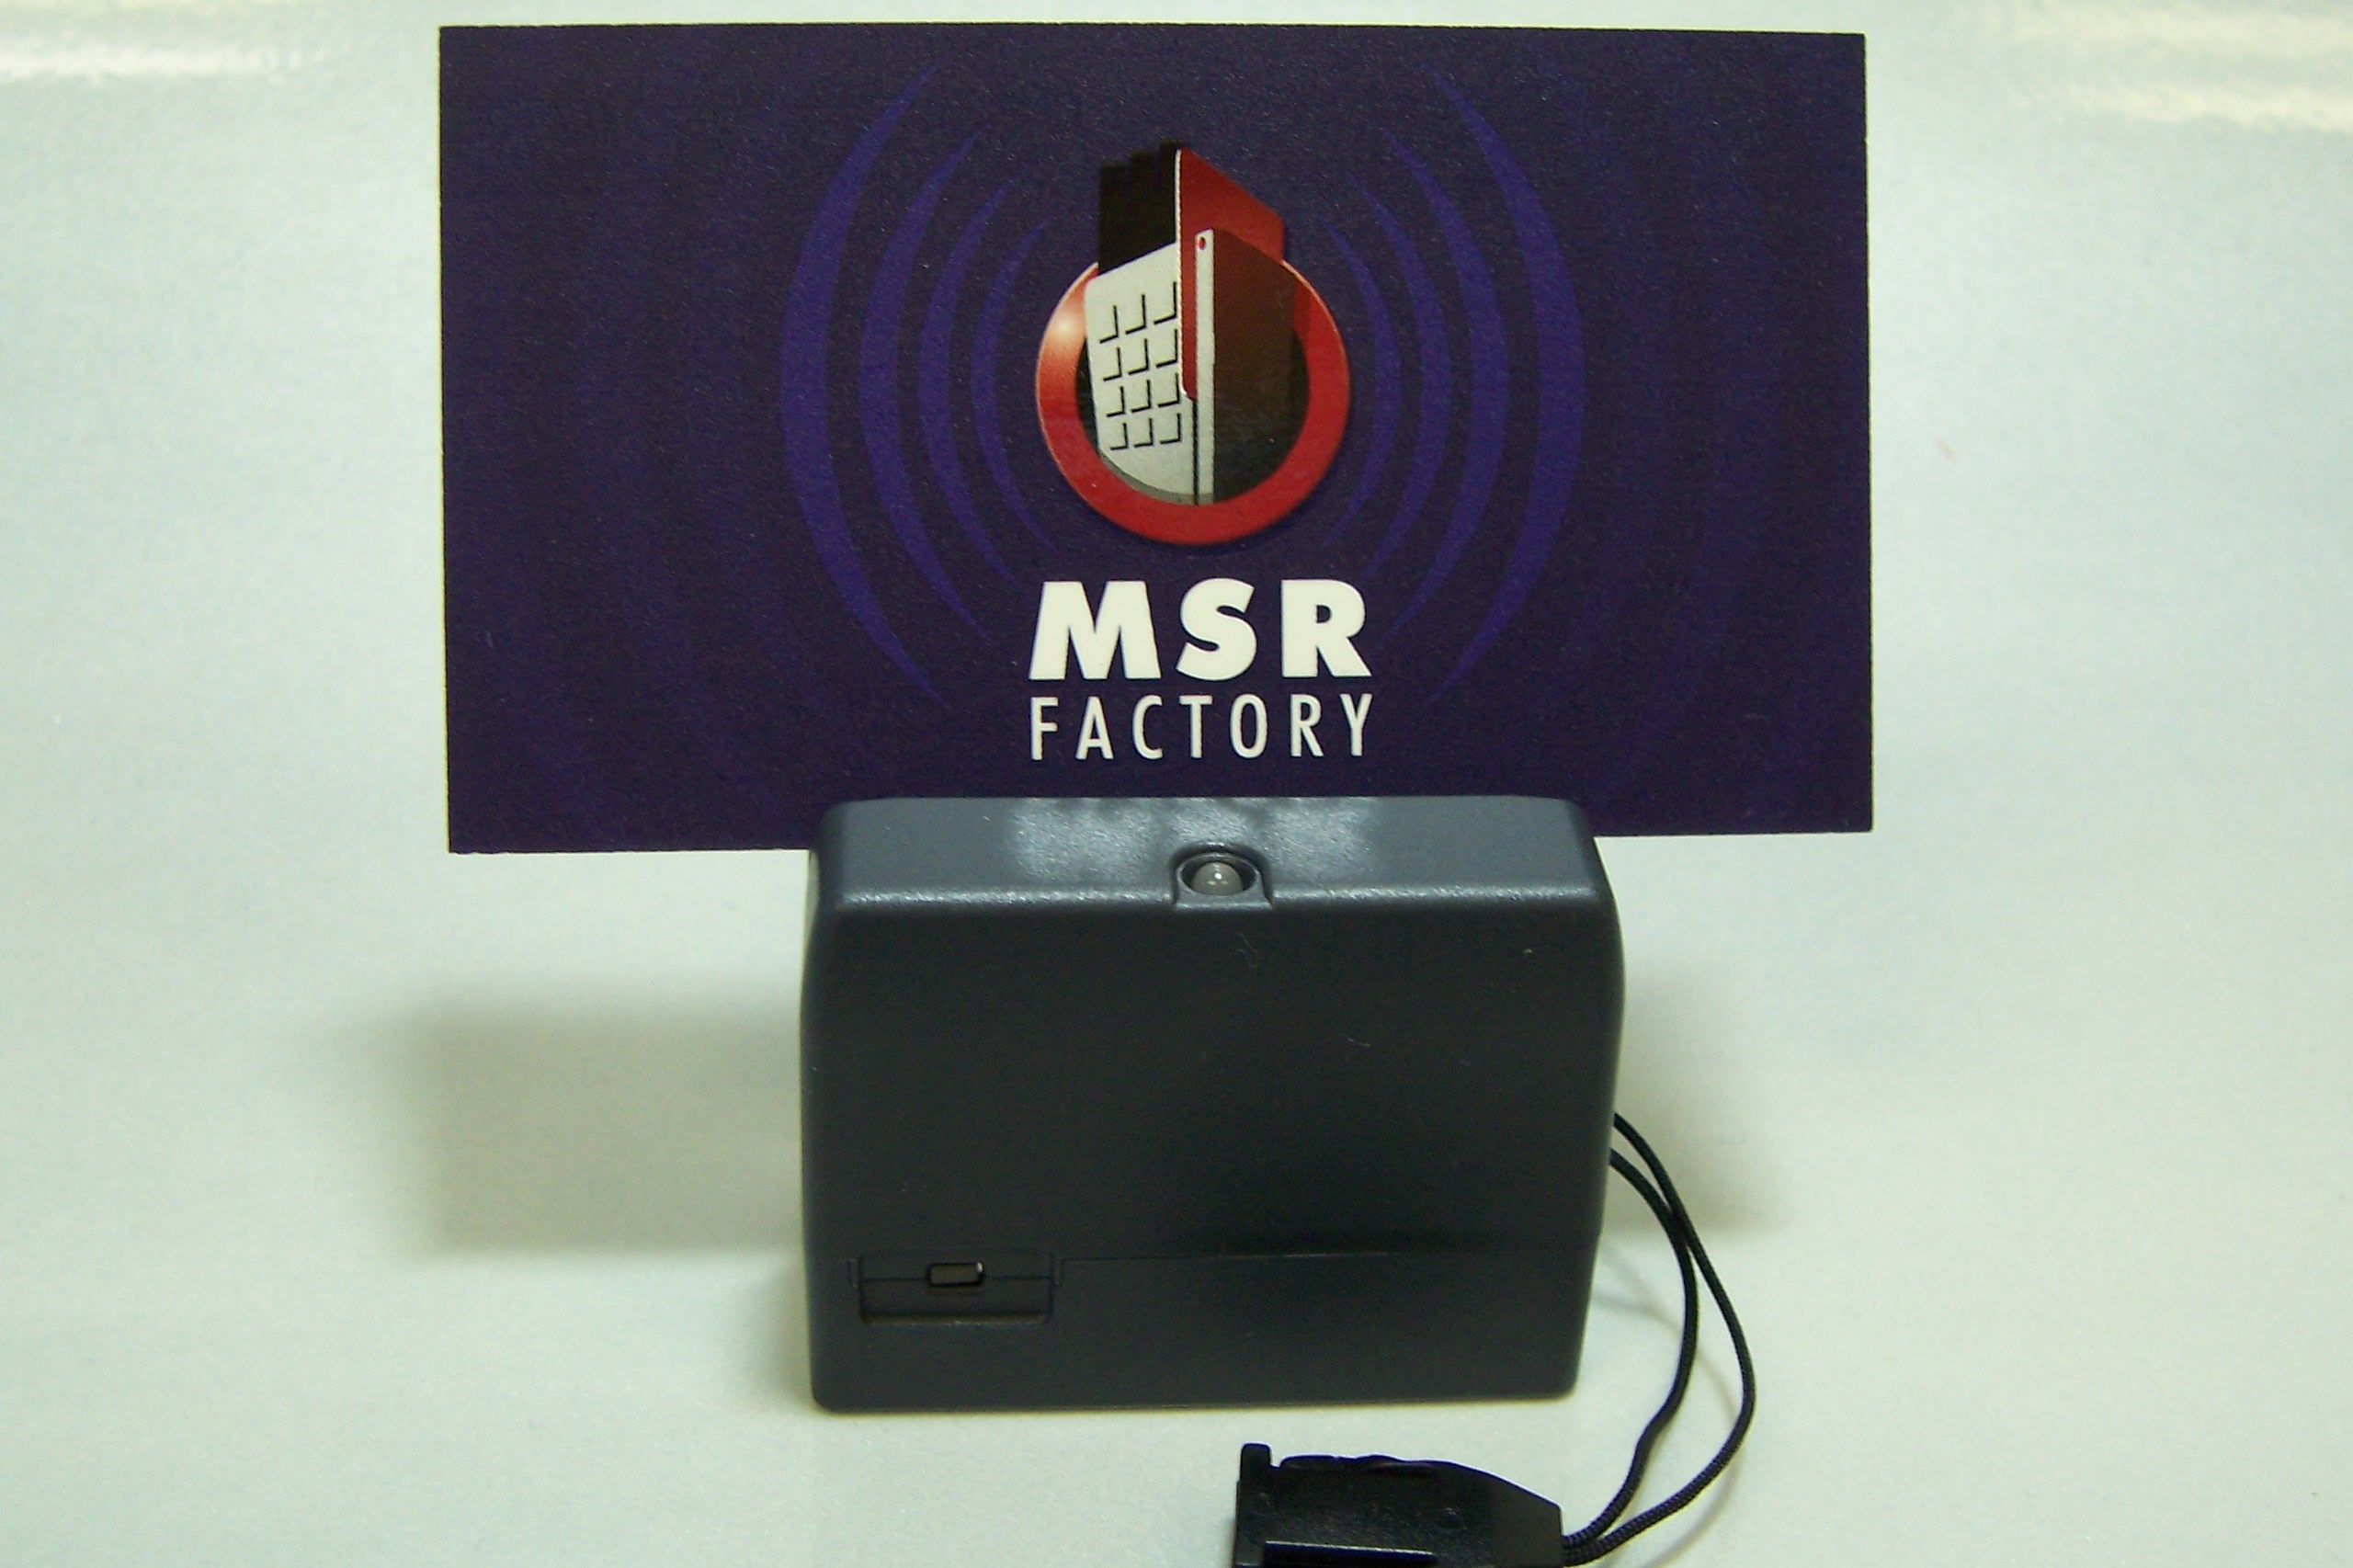 msr500m mini123 free software download